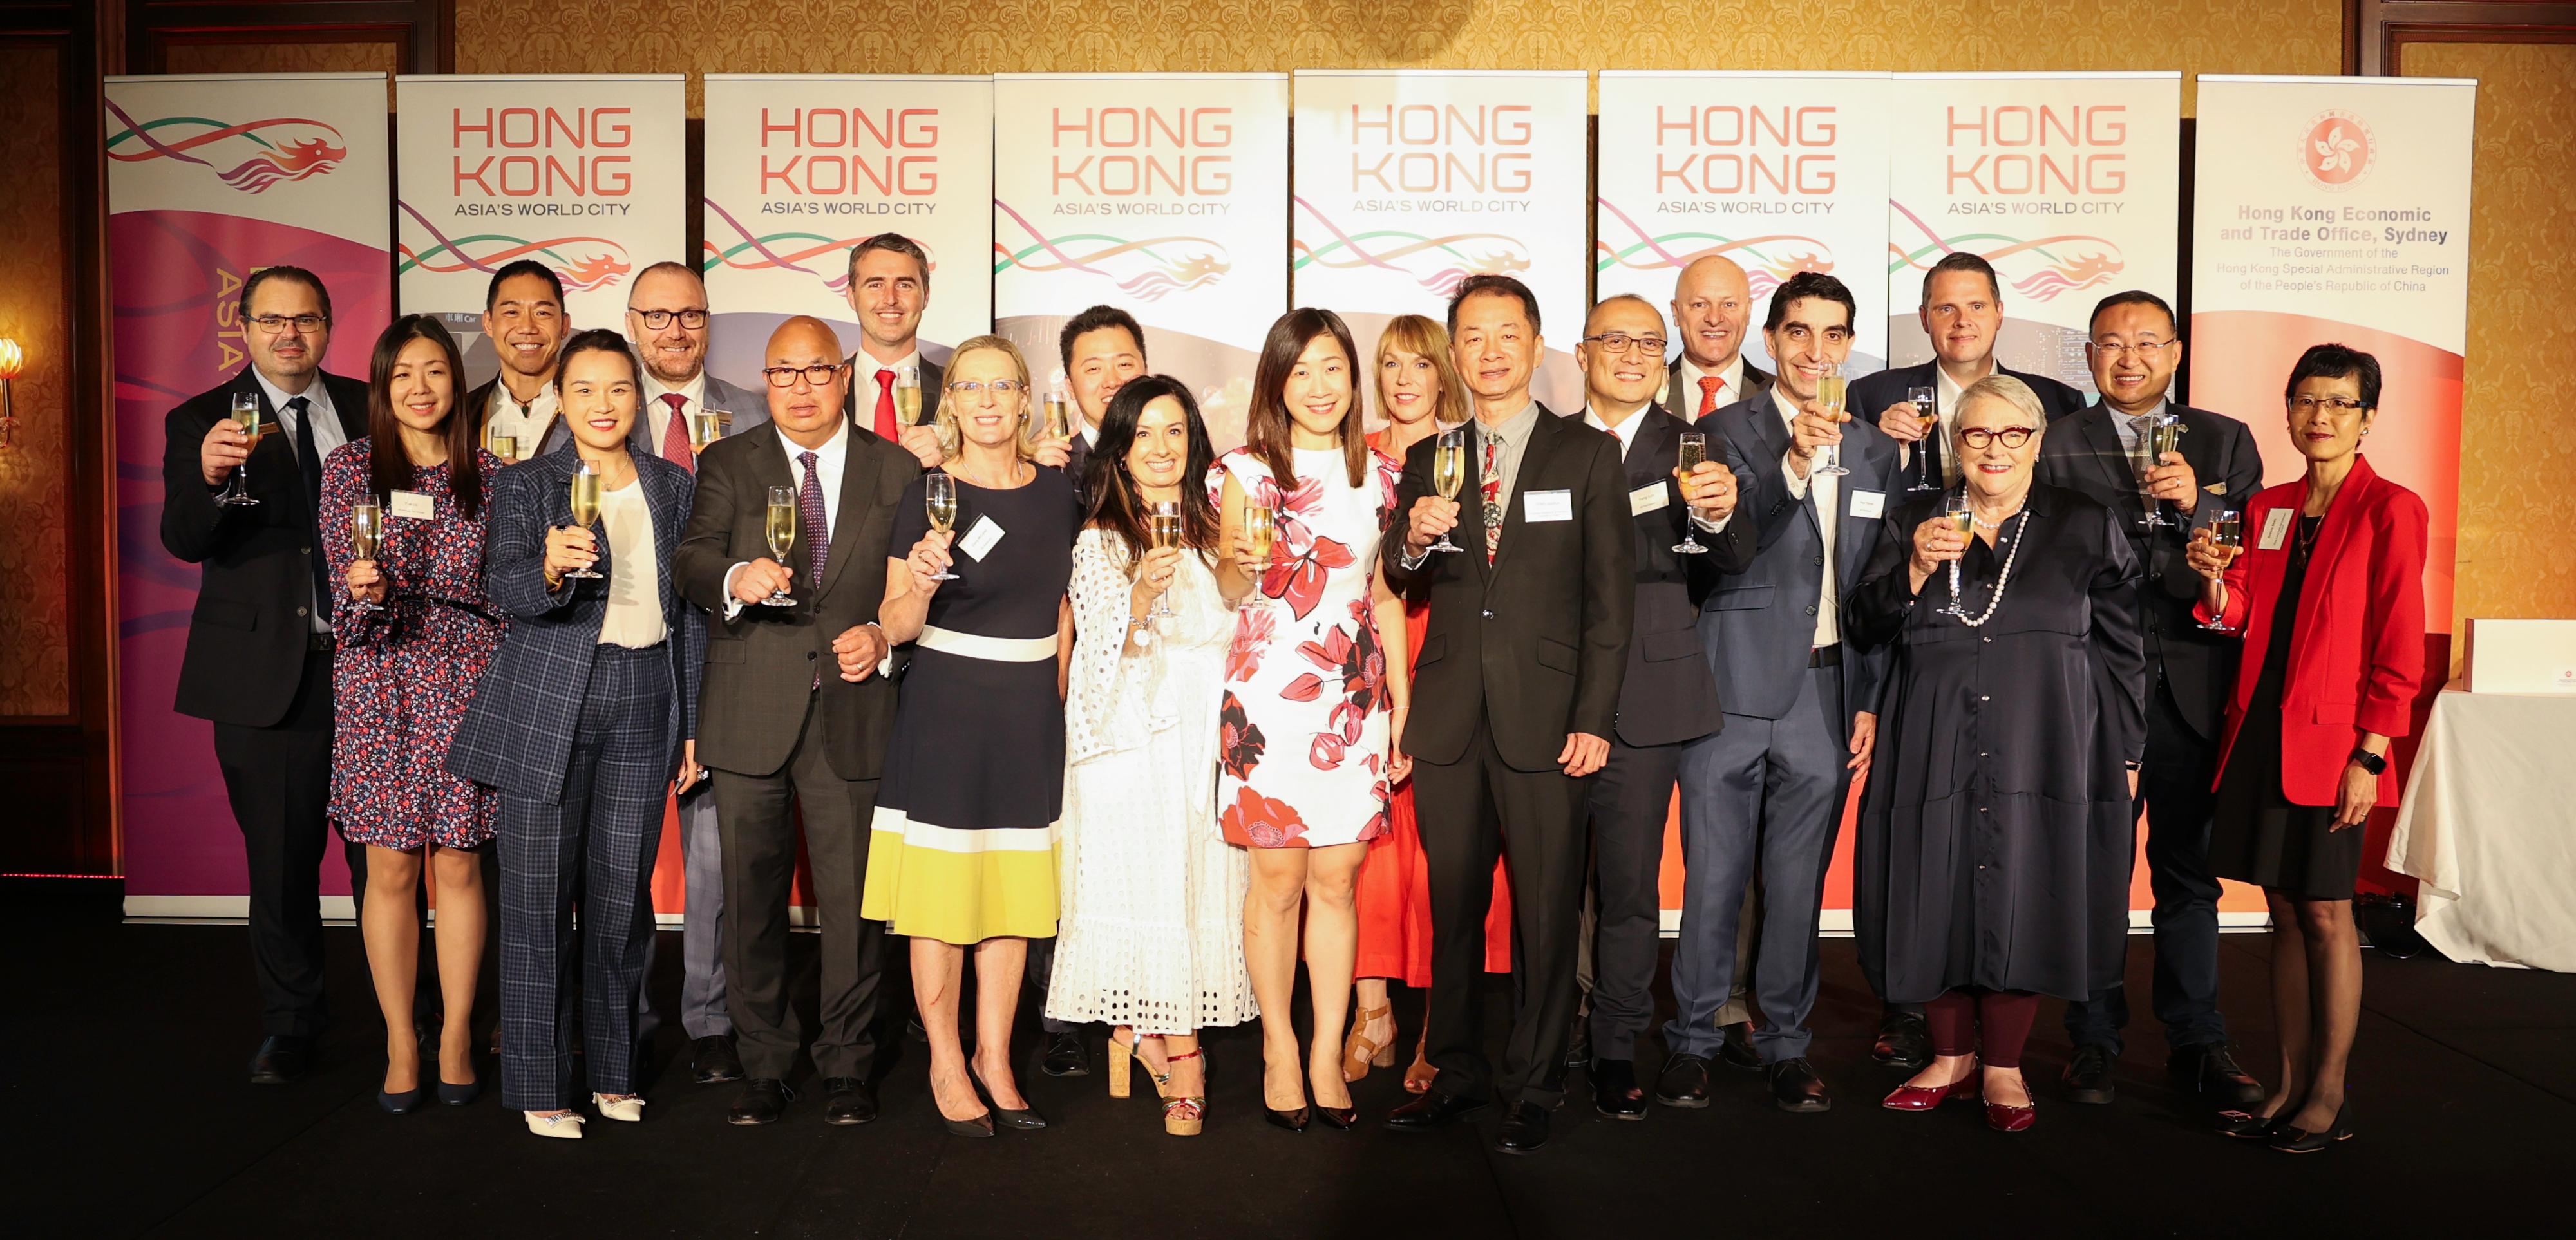 香港驻悉尼经济贸易办事处（悉尼经贸办）昨日（二月十五日）在澳洲墨尔本举行酒会，庆祝农历新年。图示悉尼经贸办处长林美仪（前排中）、中国驻墨尔本代总领事曾建华（前排右五）、维多利亚州州长代表及经济发展助理部长Paul Hamer（前排右三）和其他嘉宾主持祝酒仪式。